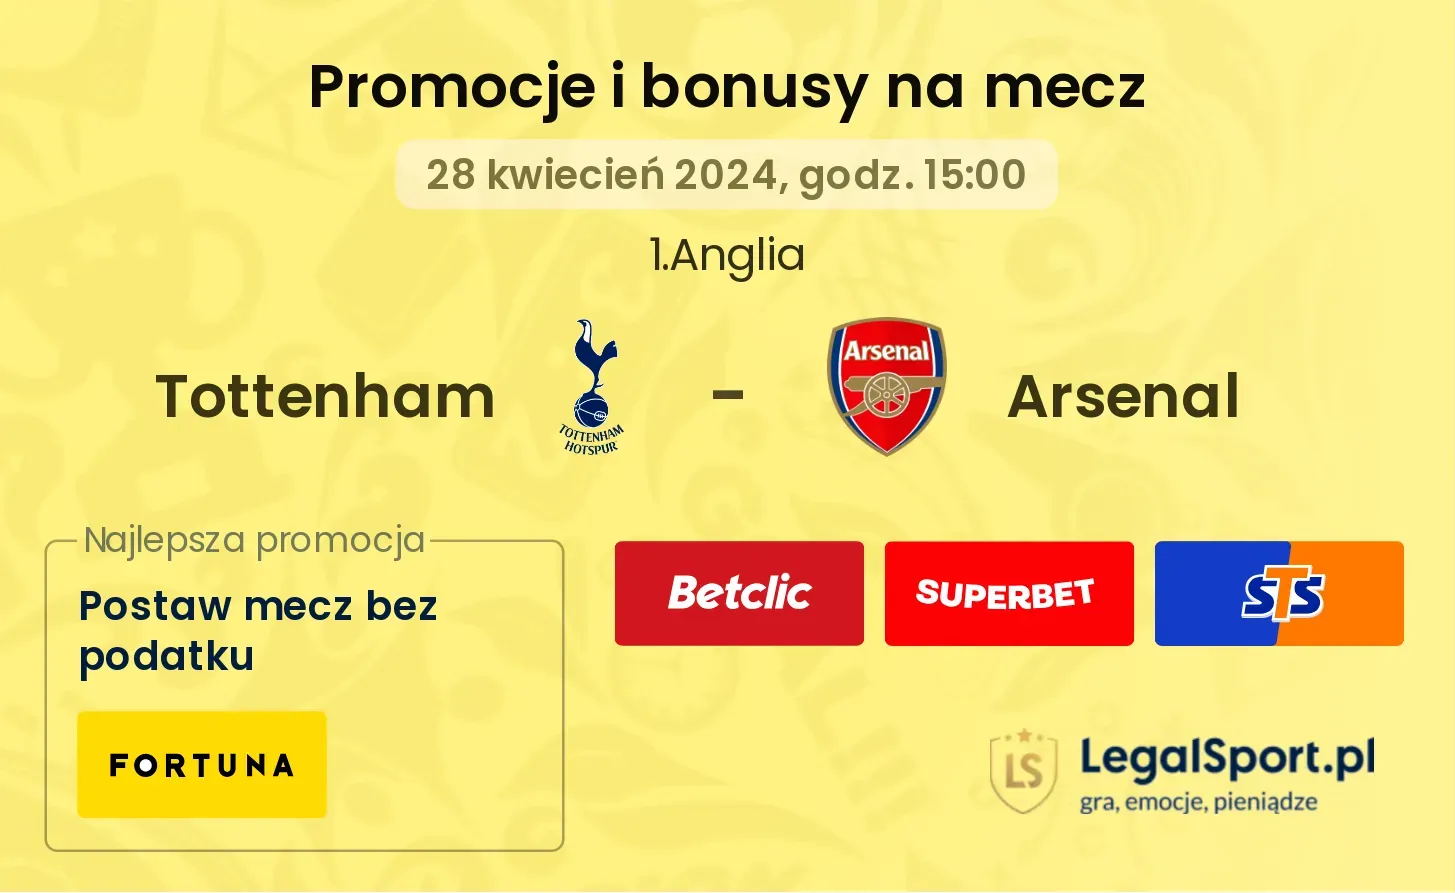 Tottenham - Arsenal promocje bonusy na mecz